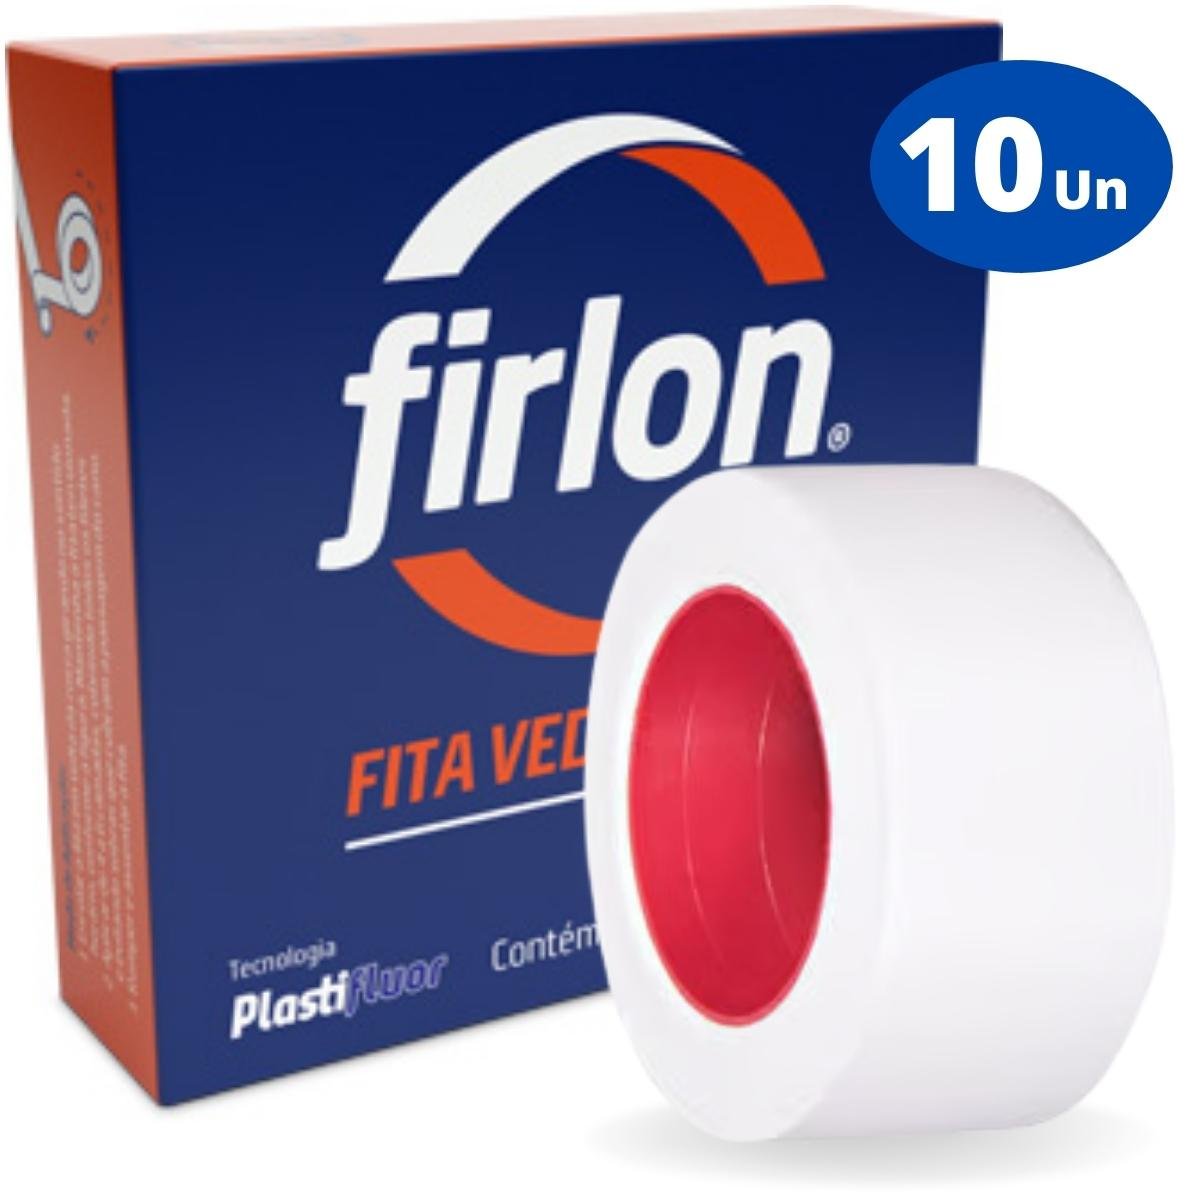 Fita Veda Rosca Teflon 18mm x 10m | Firlon | Kit 10 Un